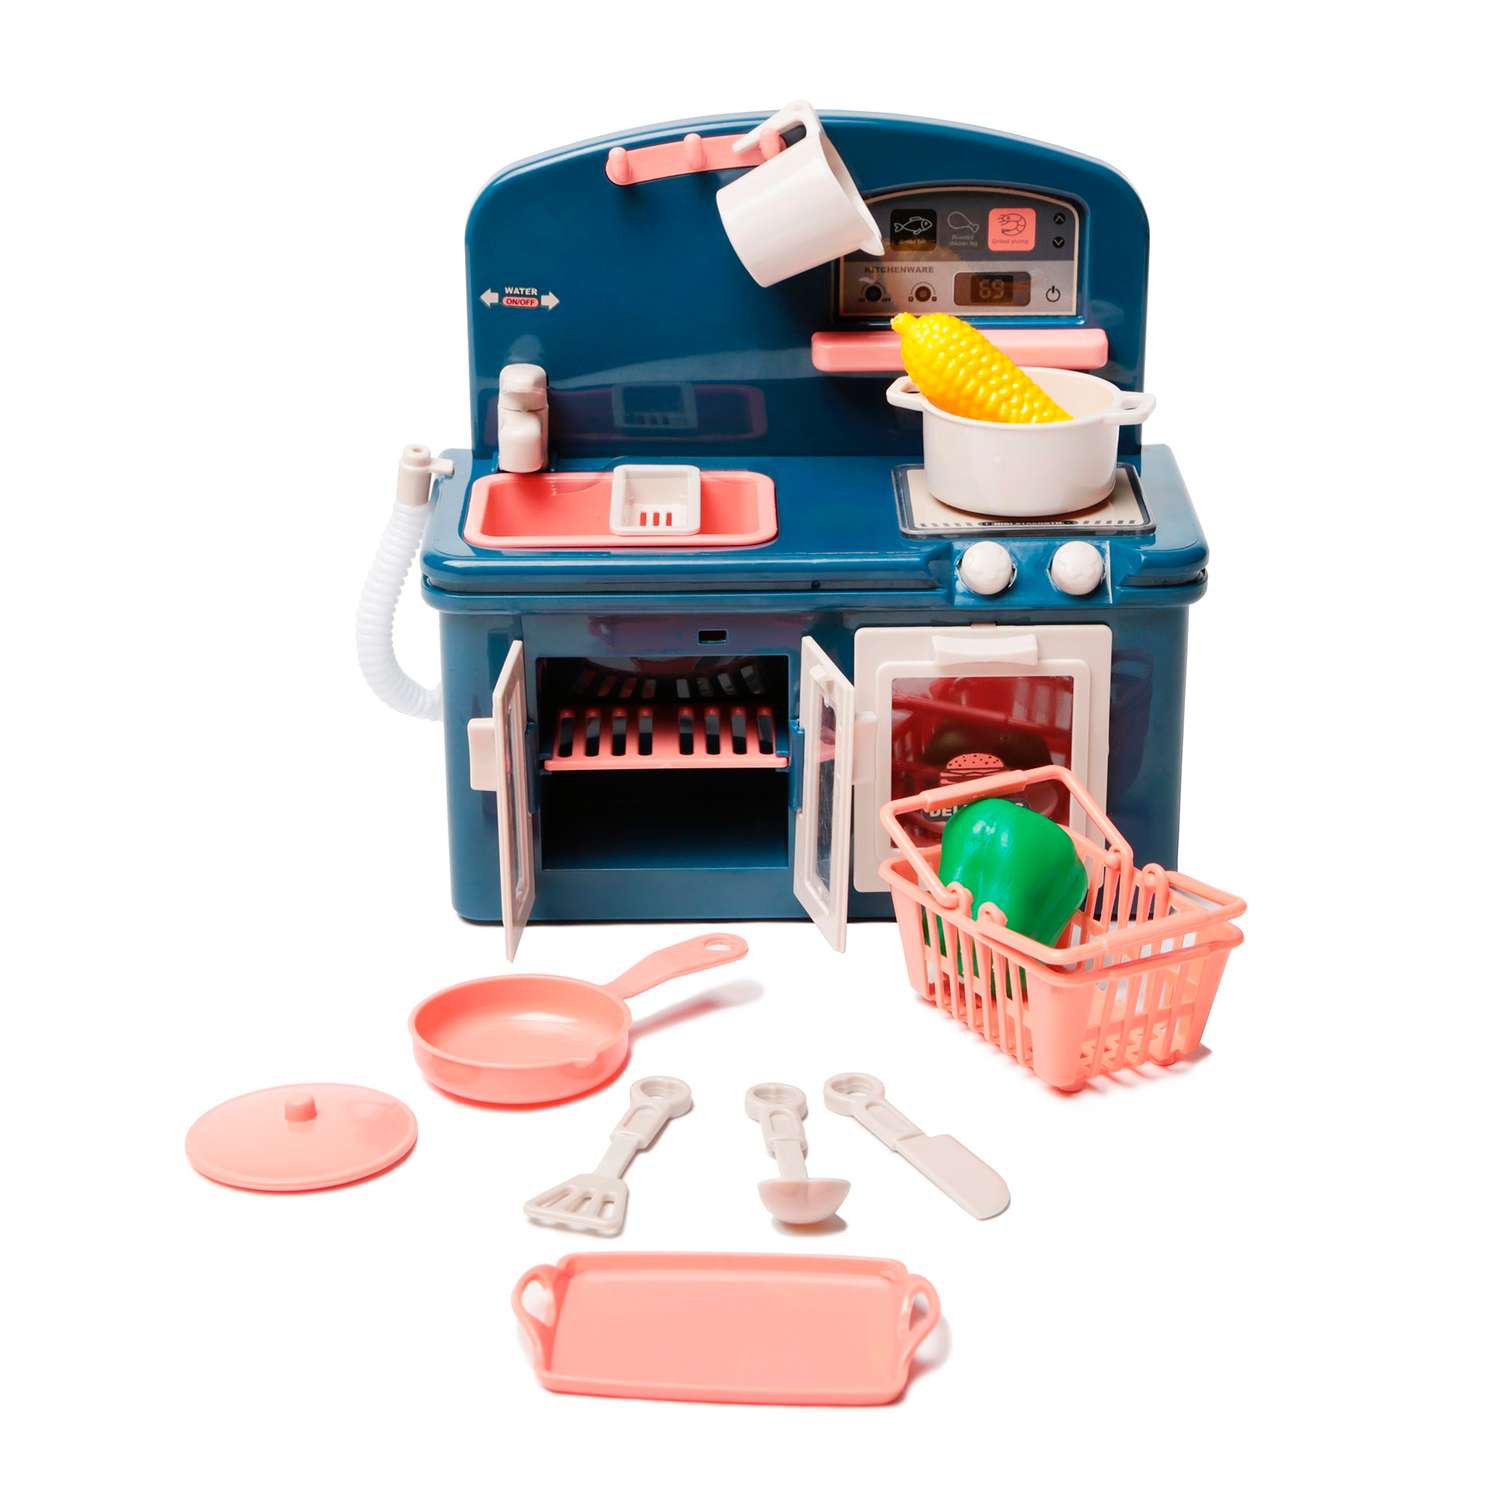 Игровой набор Кухня S+S игрушечная плита с духовкой на батарейках - фото 2